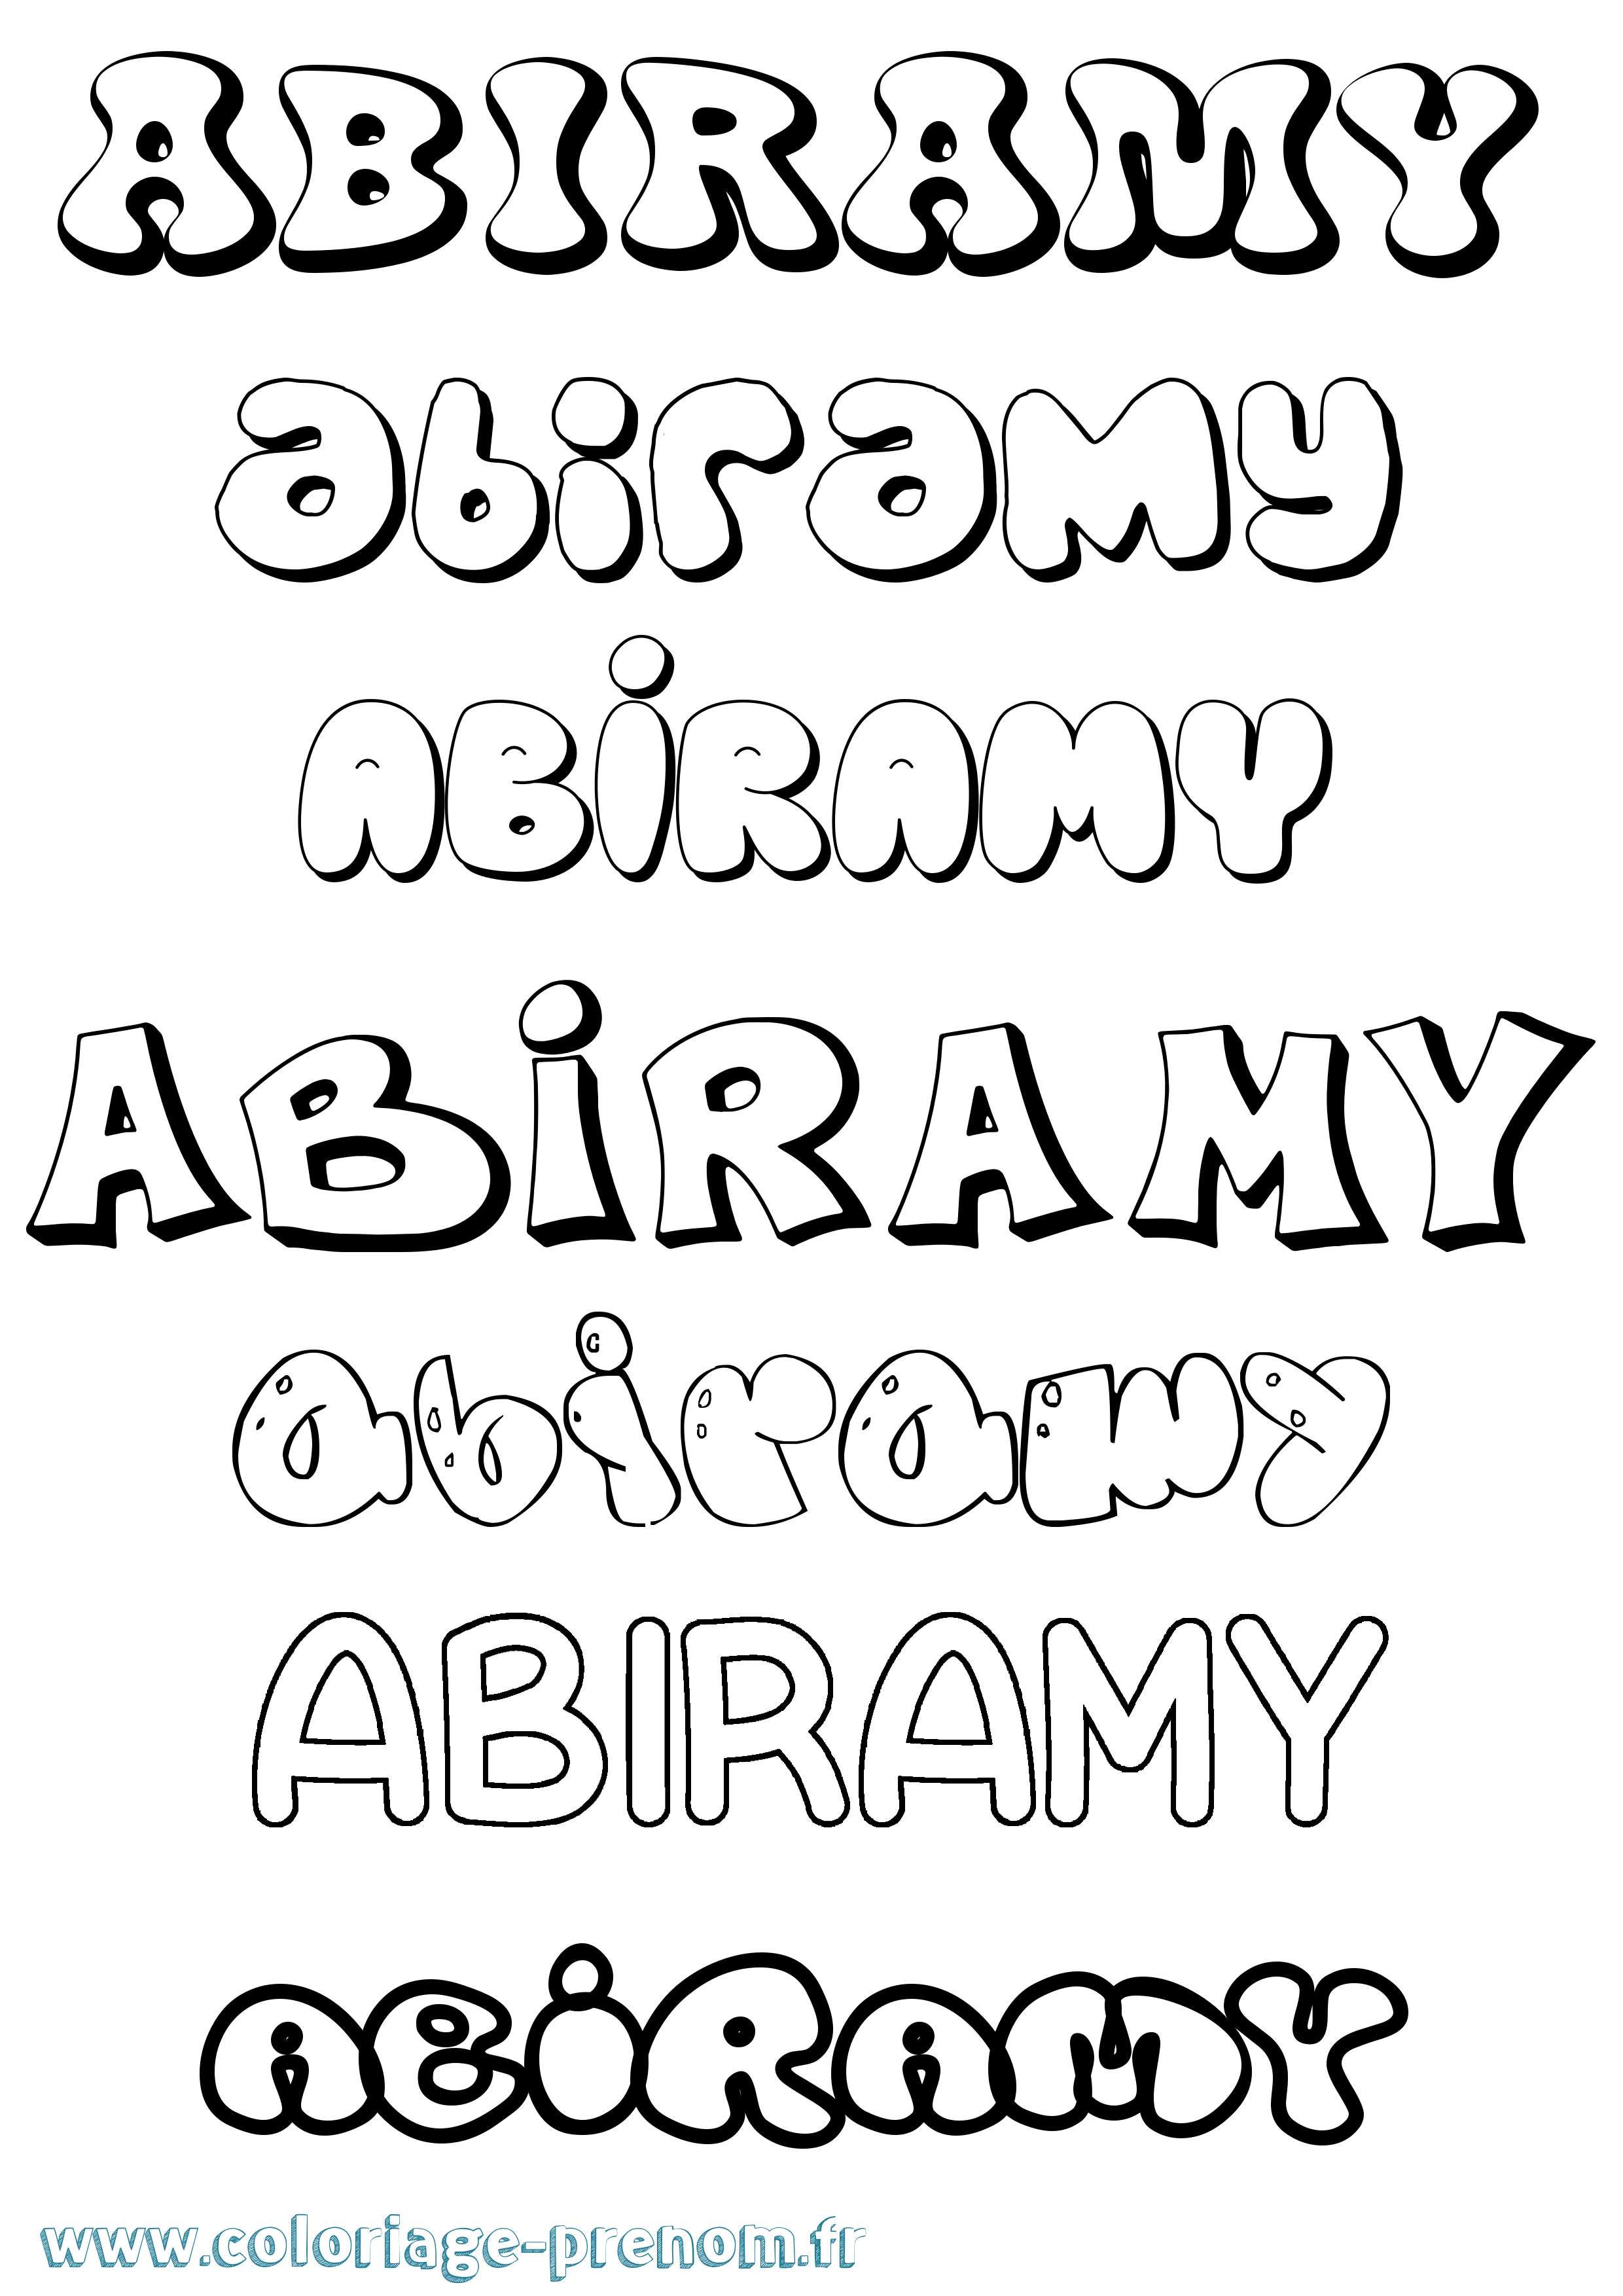 Coloriage prénom Abiramy Bubble